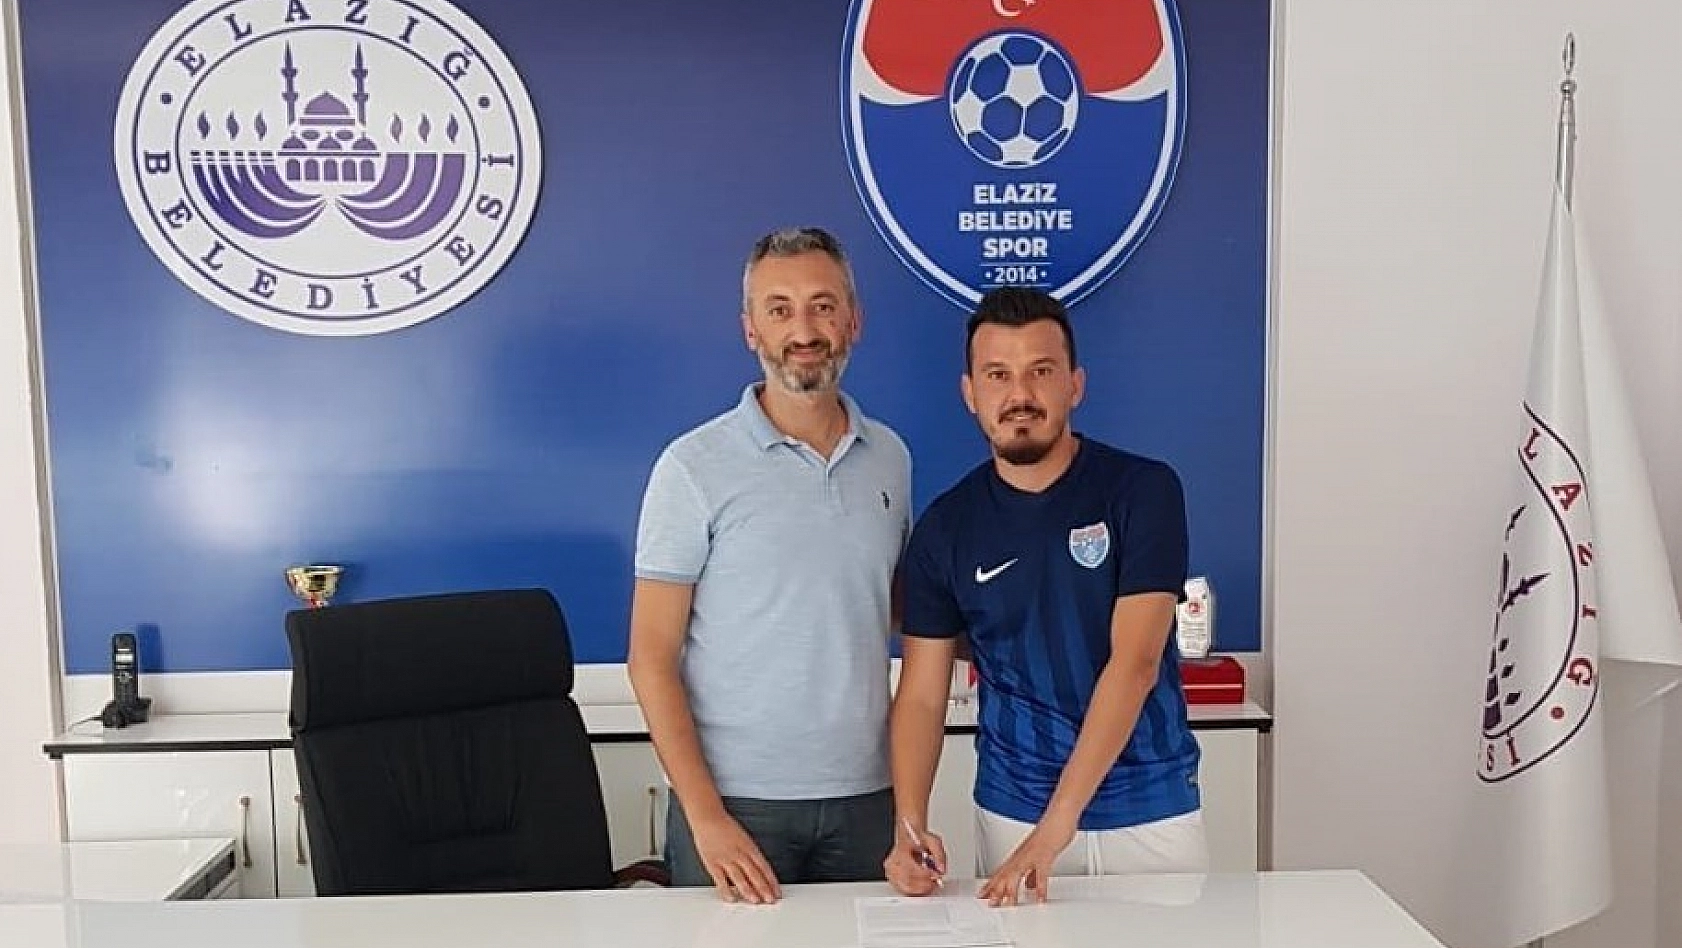 Elaziz Belediyespor, Soytaş'ı transfer etti